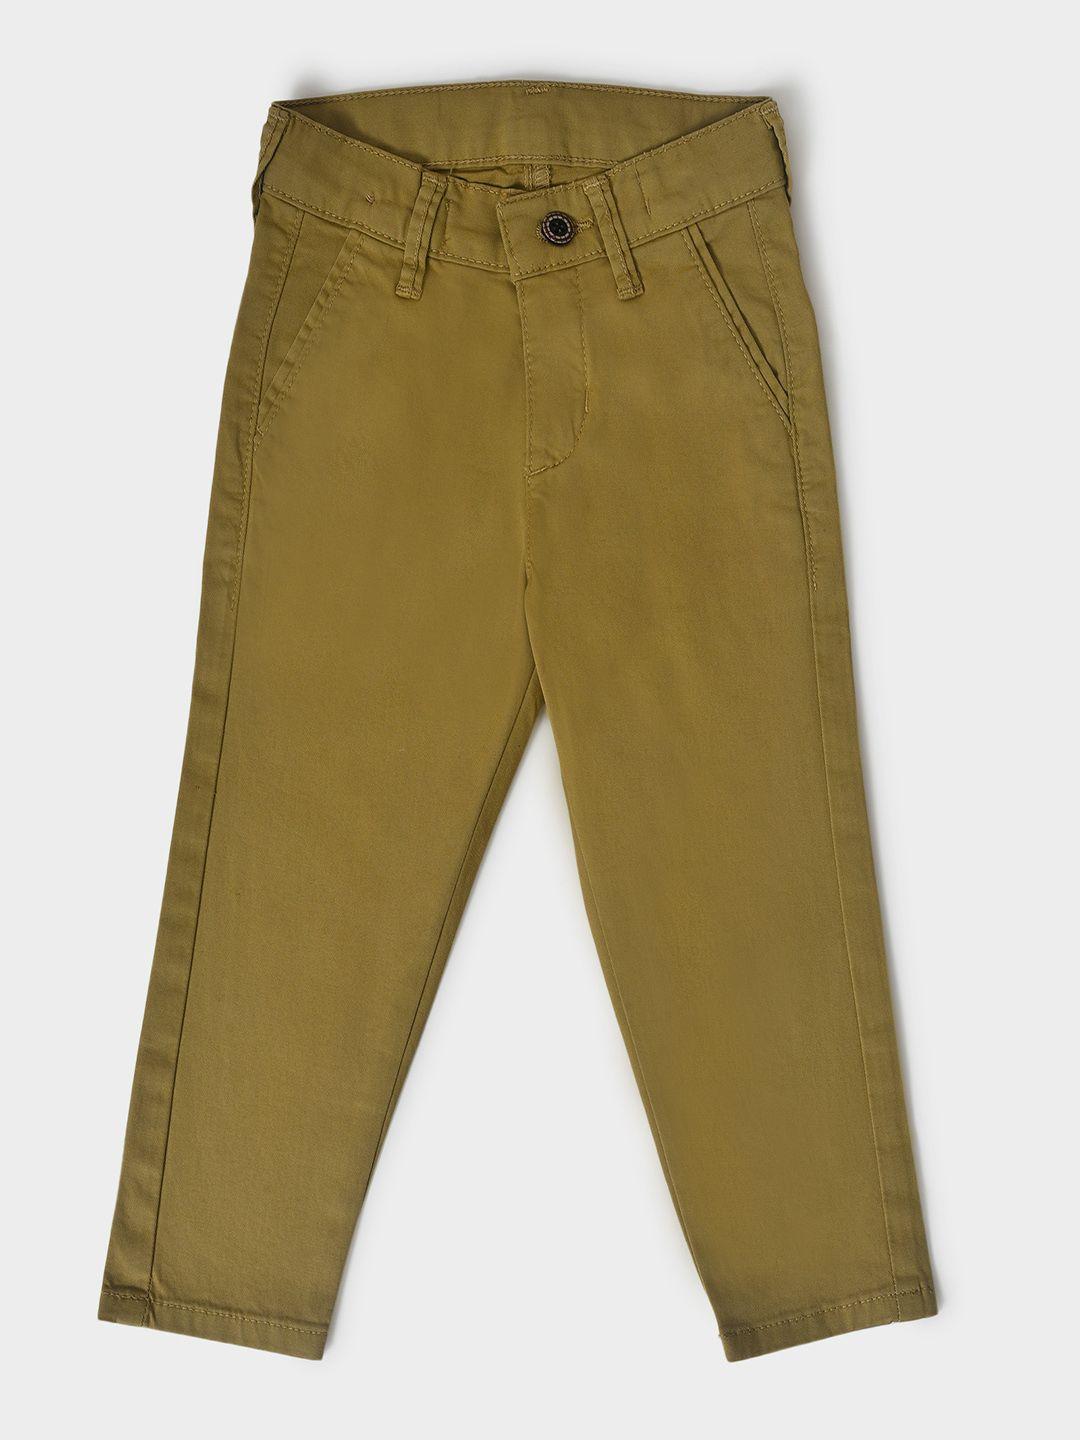 miarcus boys cotton slim fit stretchable jeans